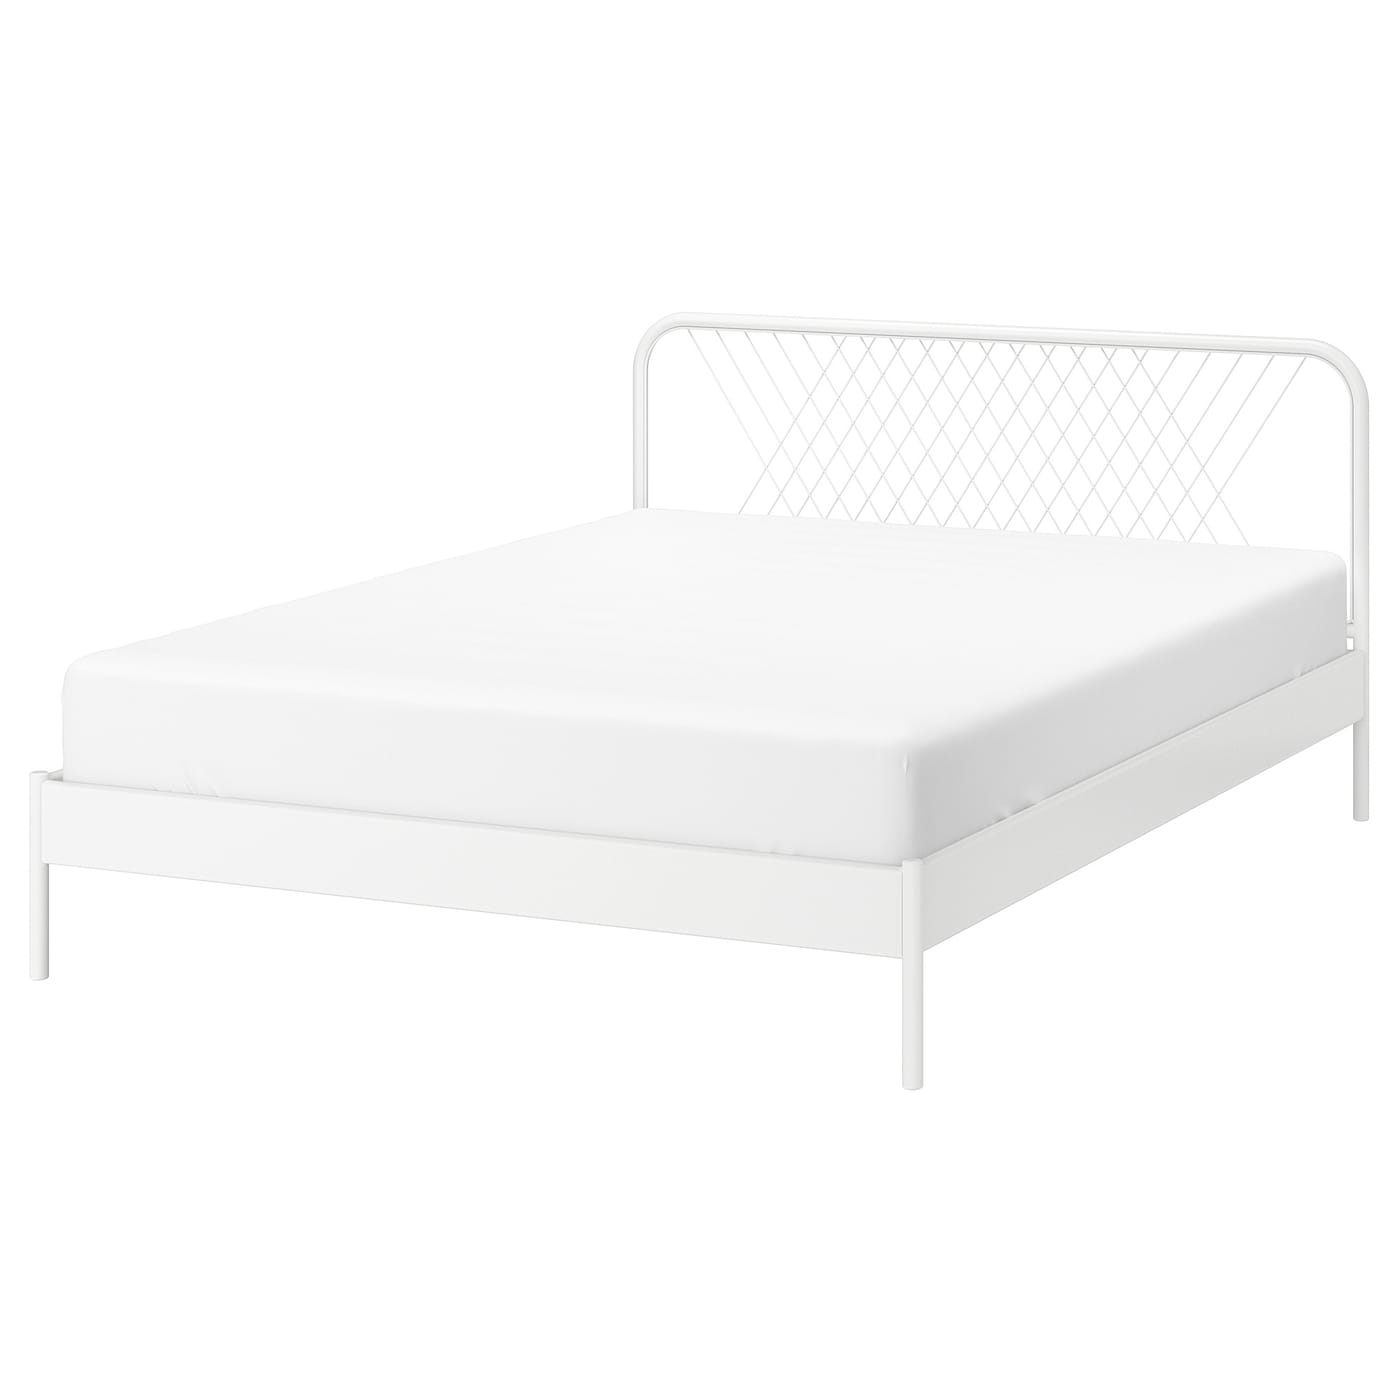 Каркас кровати - IKEA NESTTUN, 200х140 см, белый, НЕСТТУН ИКЕА